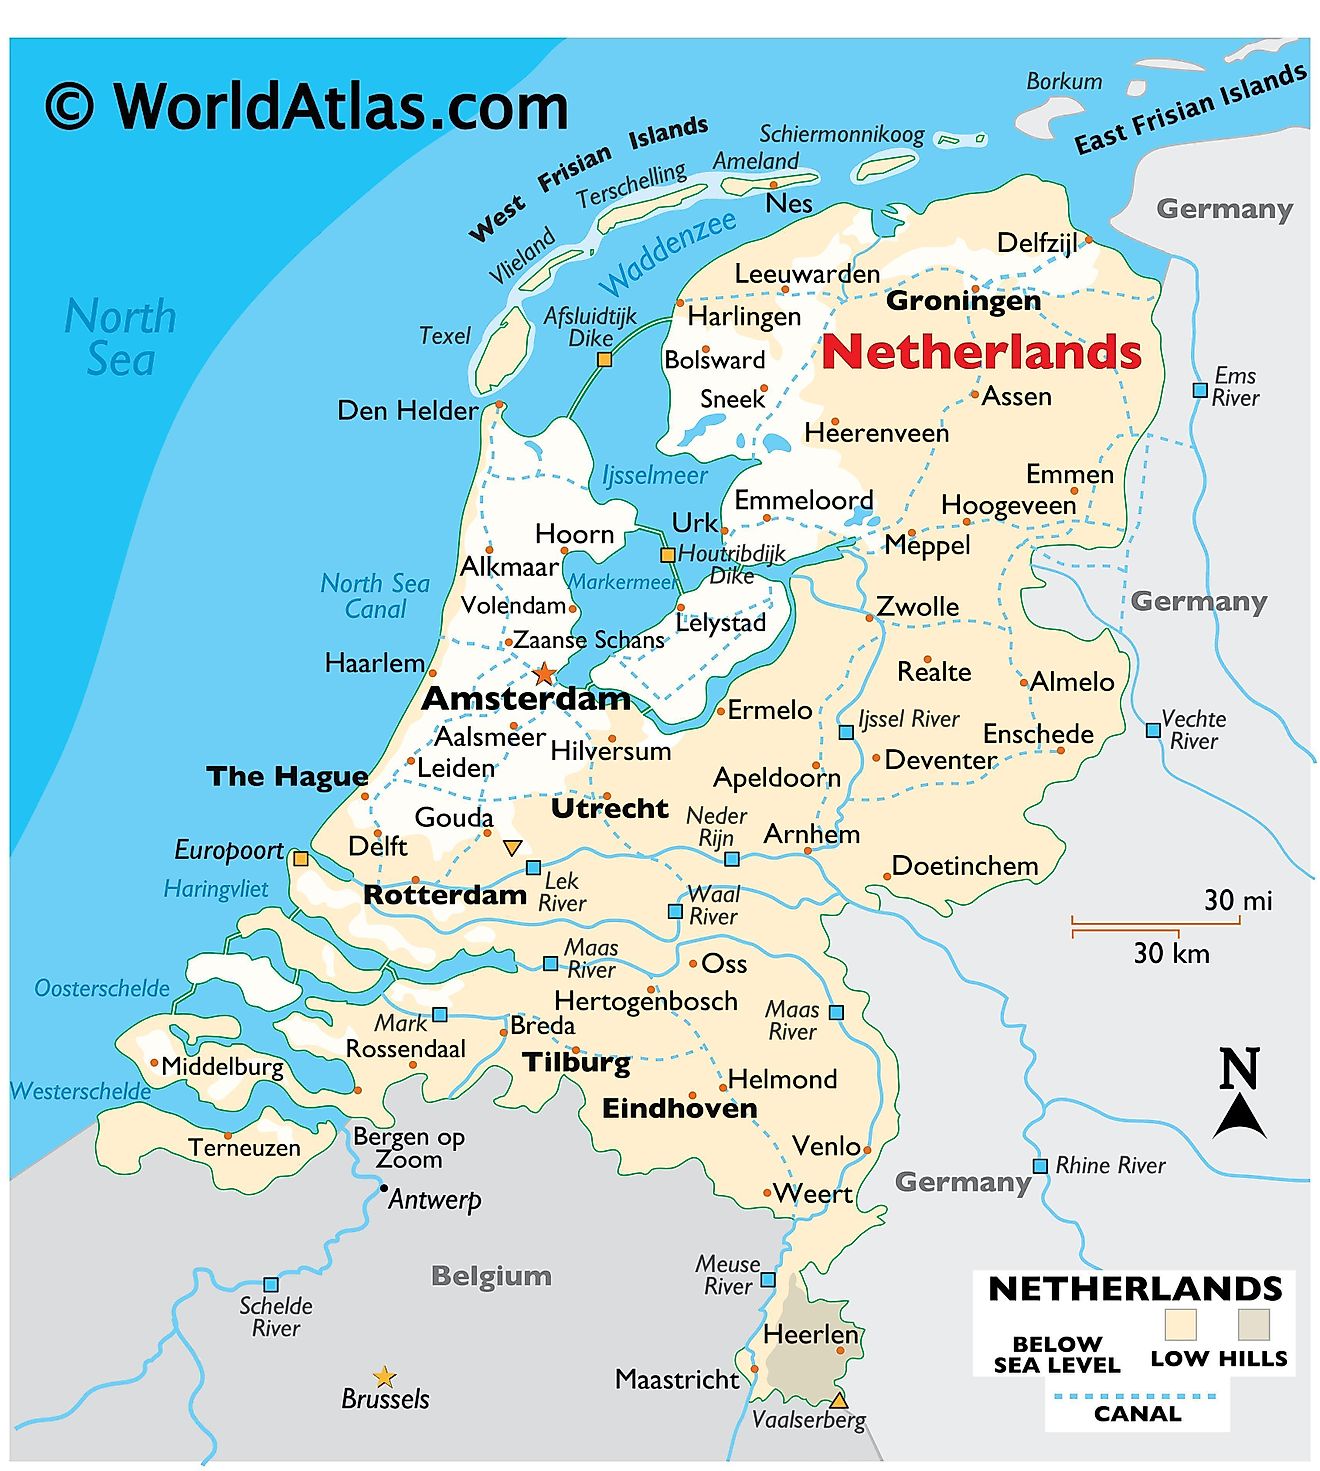 オランダの物理地図で、レリーフ、国際境界線、主要河川、極点、重要都市、島などが表示されます。